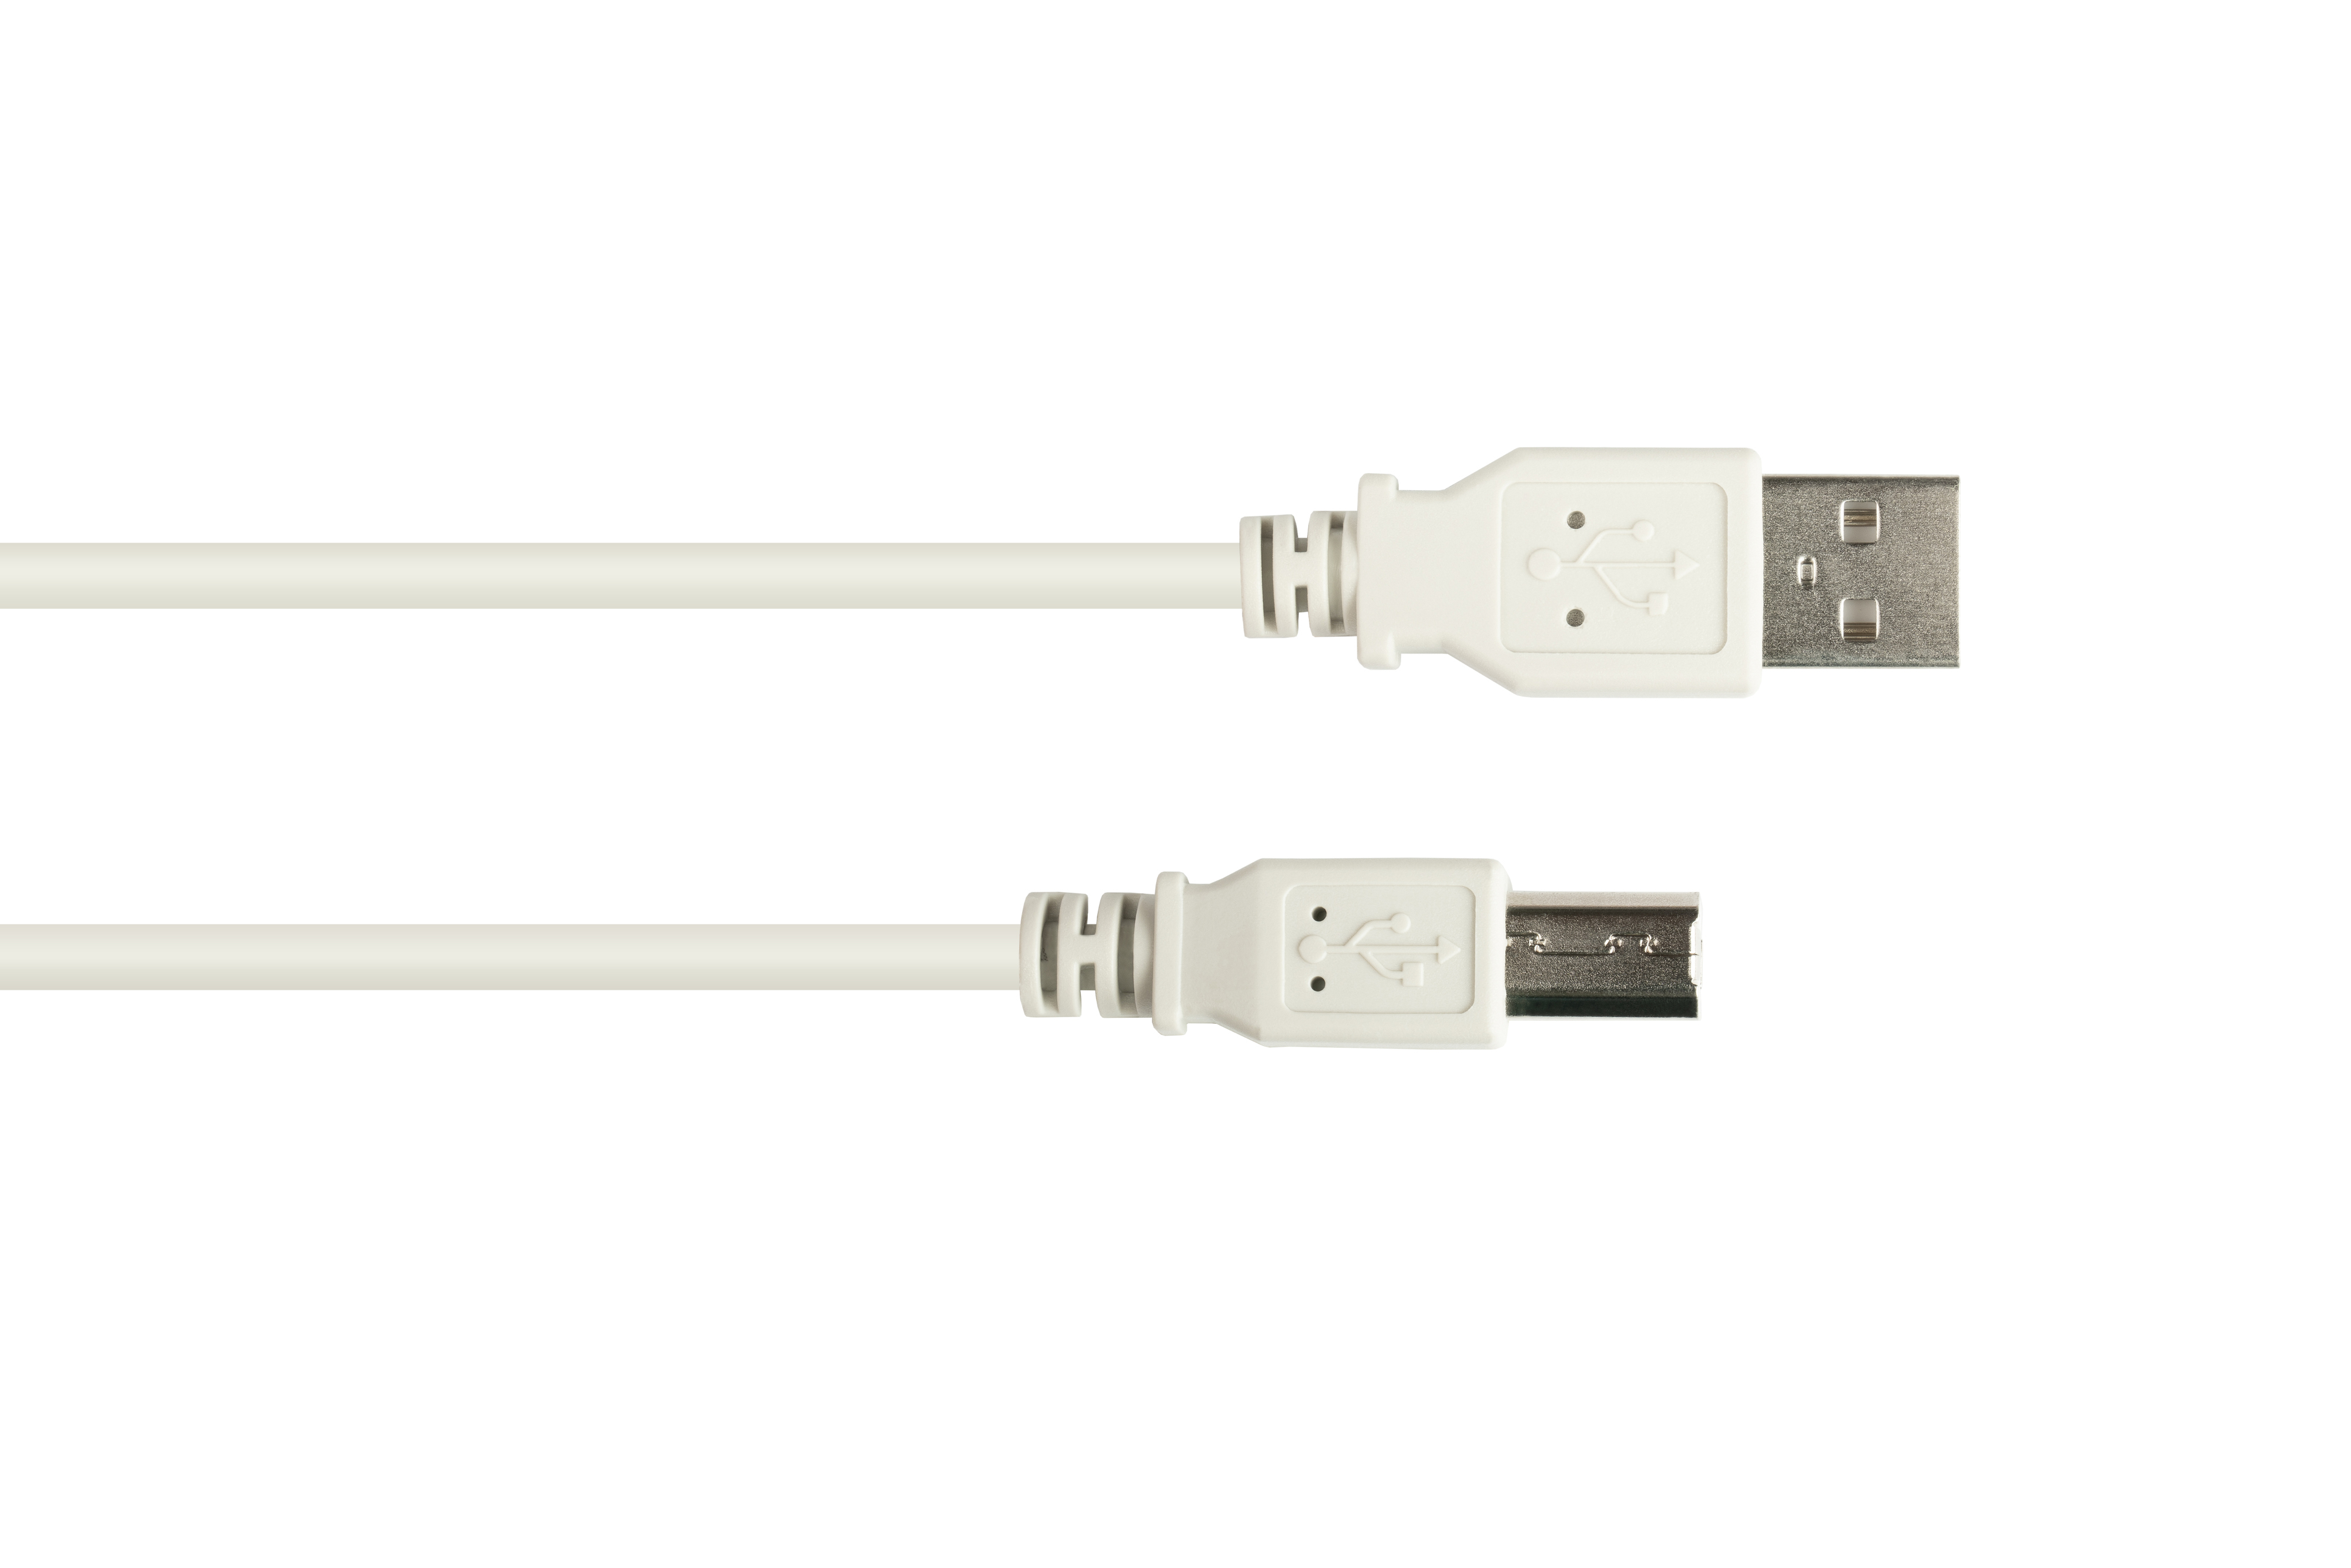 GOOD CONNECTIONS USB 2.0 B, Anschlusskabel grau Stecker A an Stecker